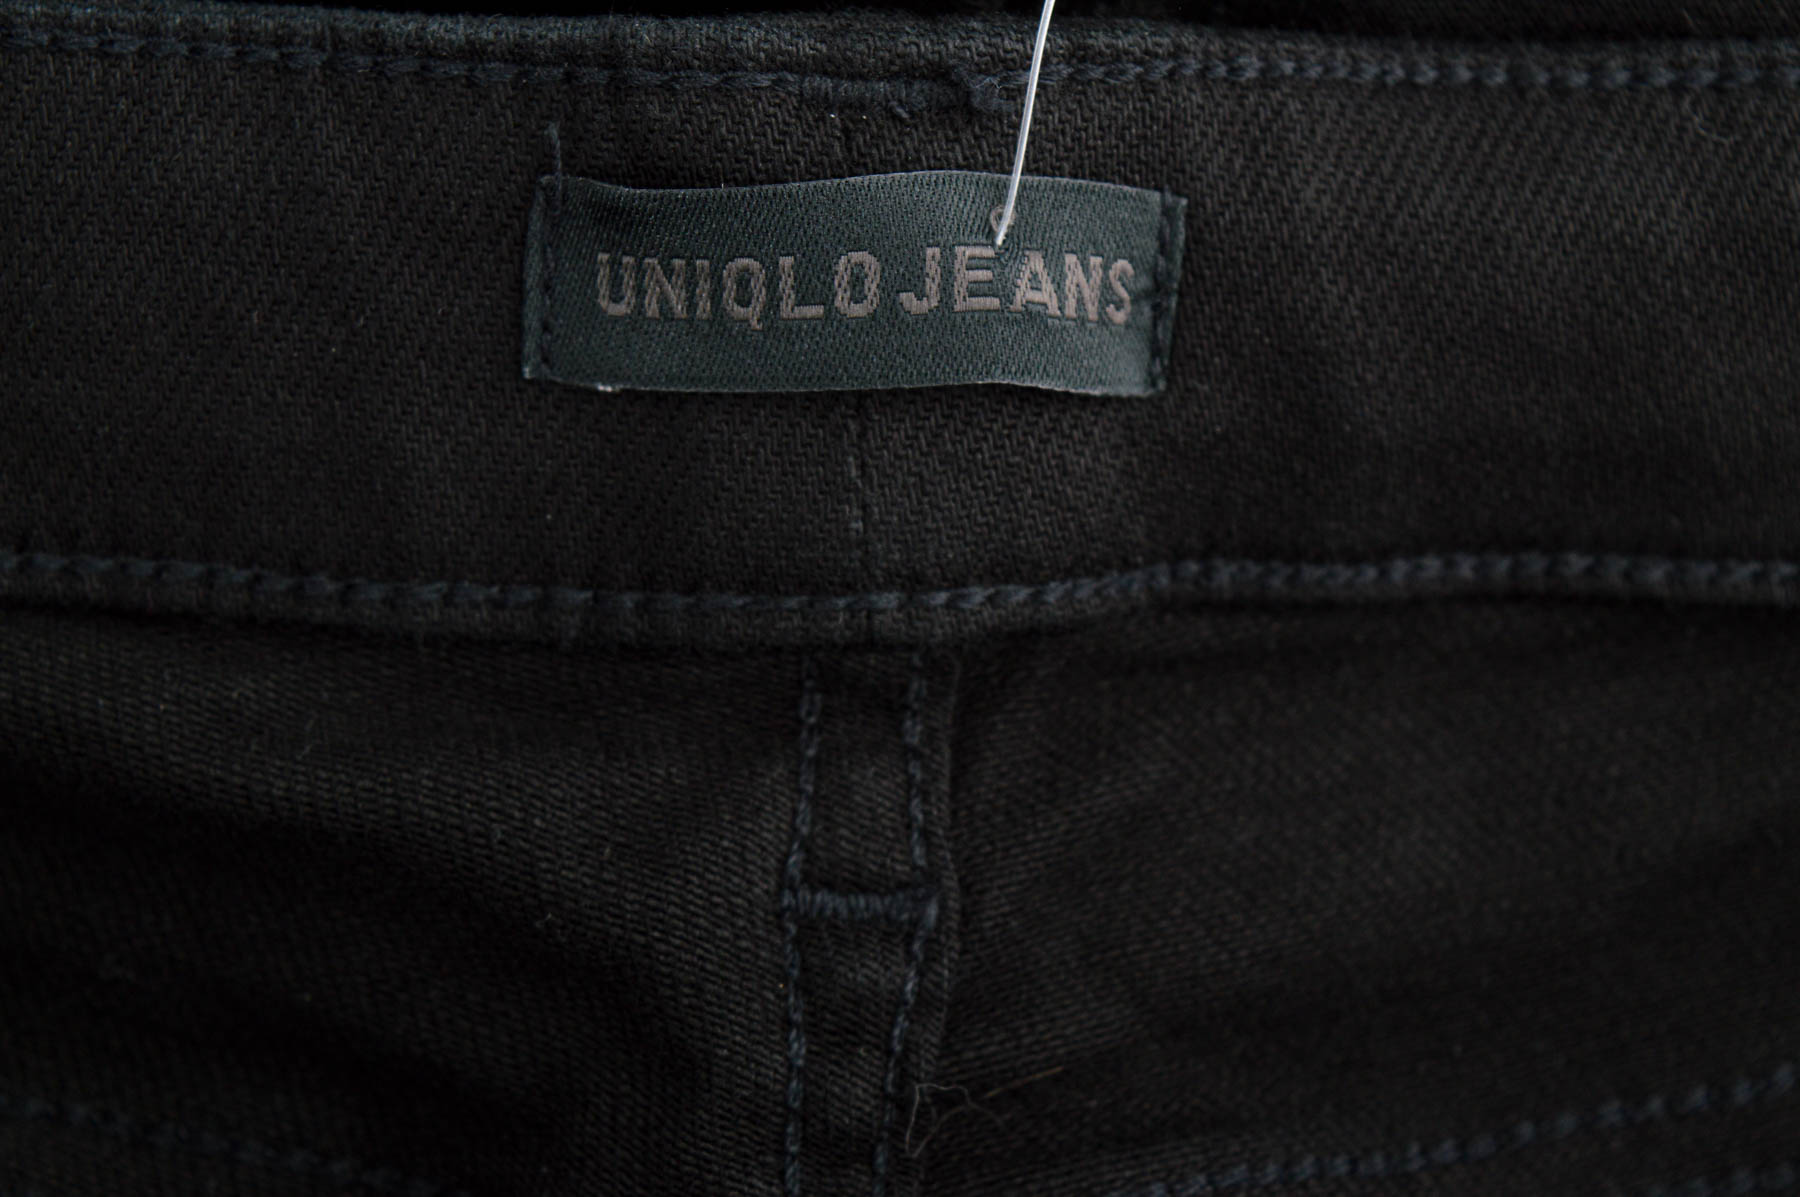 Men's jeans - UNIQLO JEANS - 2